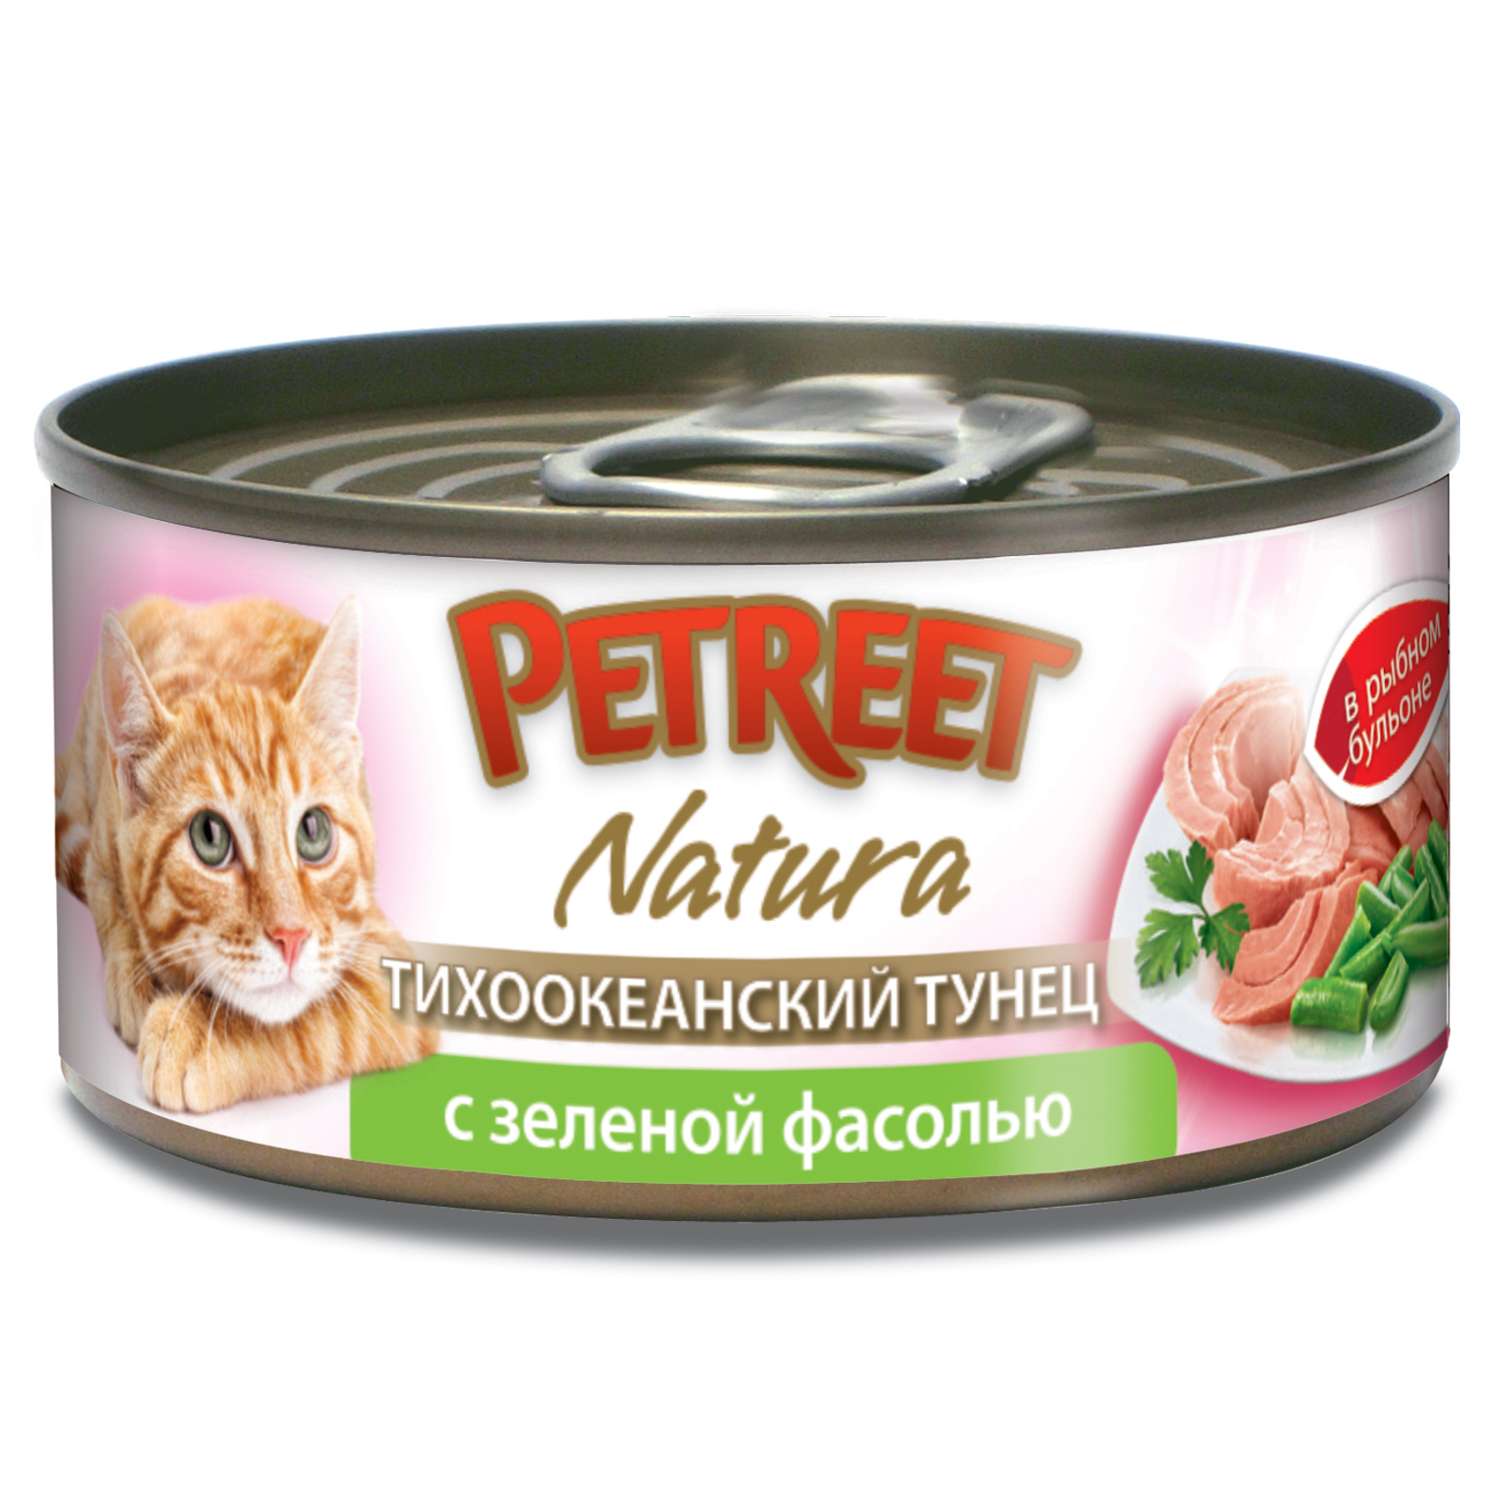 Корм влажный для кошек Petreet 70г кусочки тихоокеанского тунца с зеленой фасолью в рыбном бульоне консервированный - фото 1